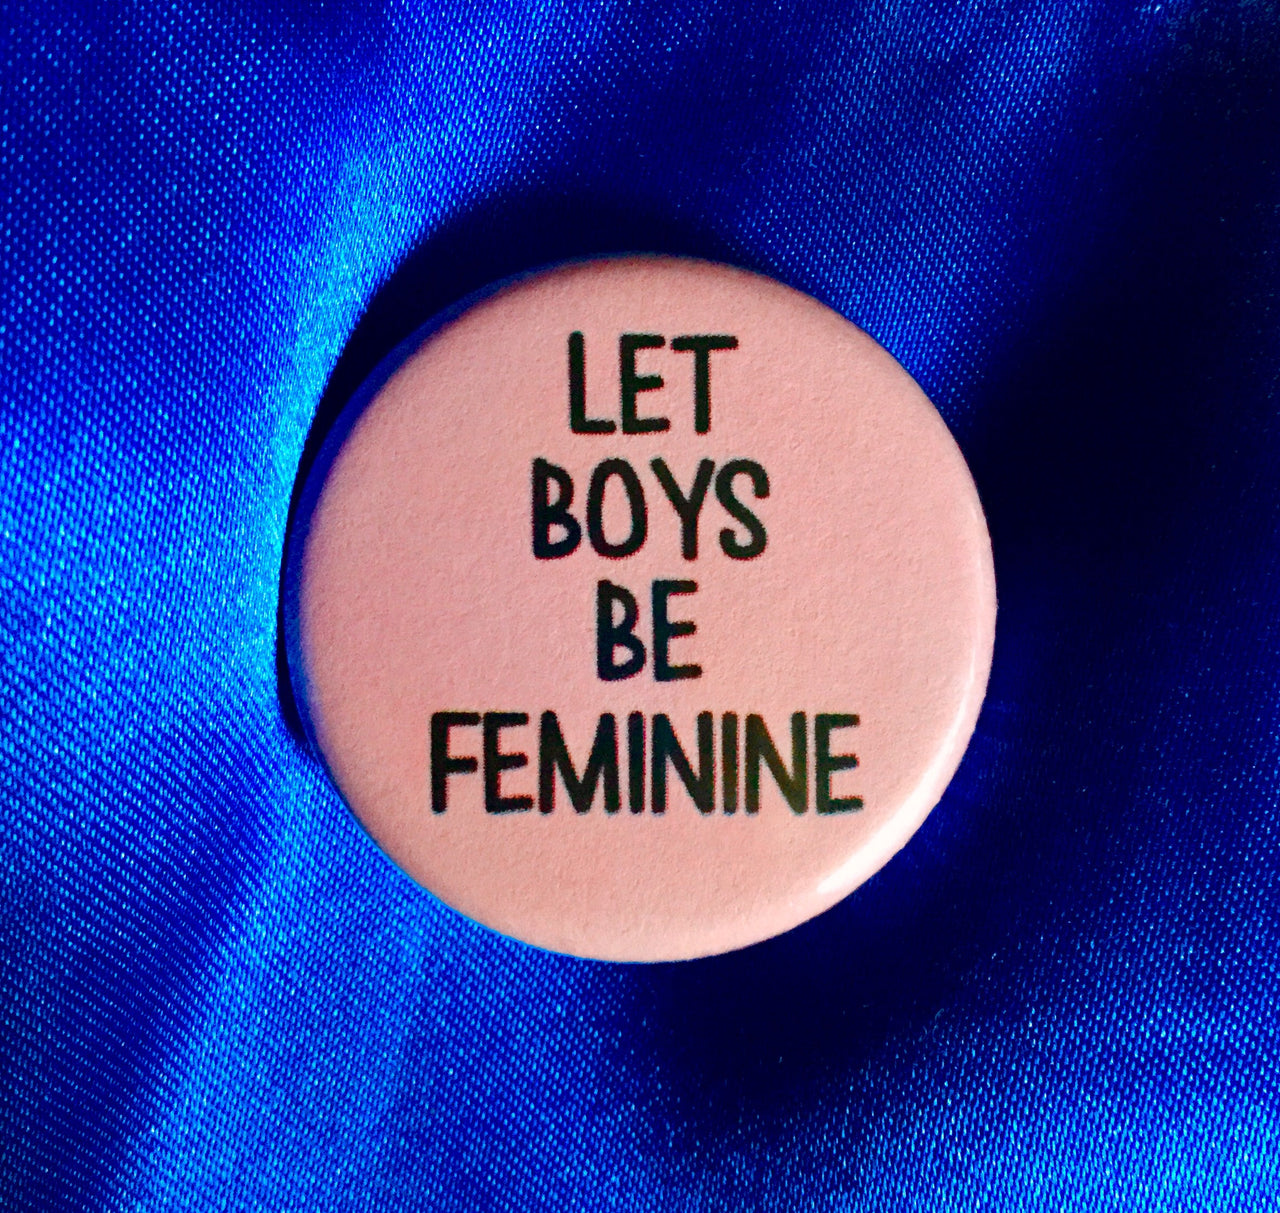 Let boys be feminine - Radical Buttons